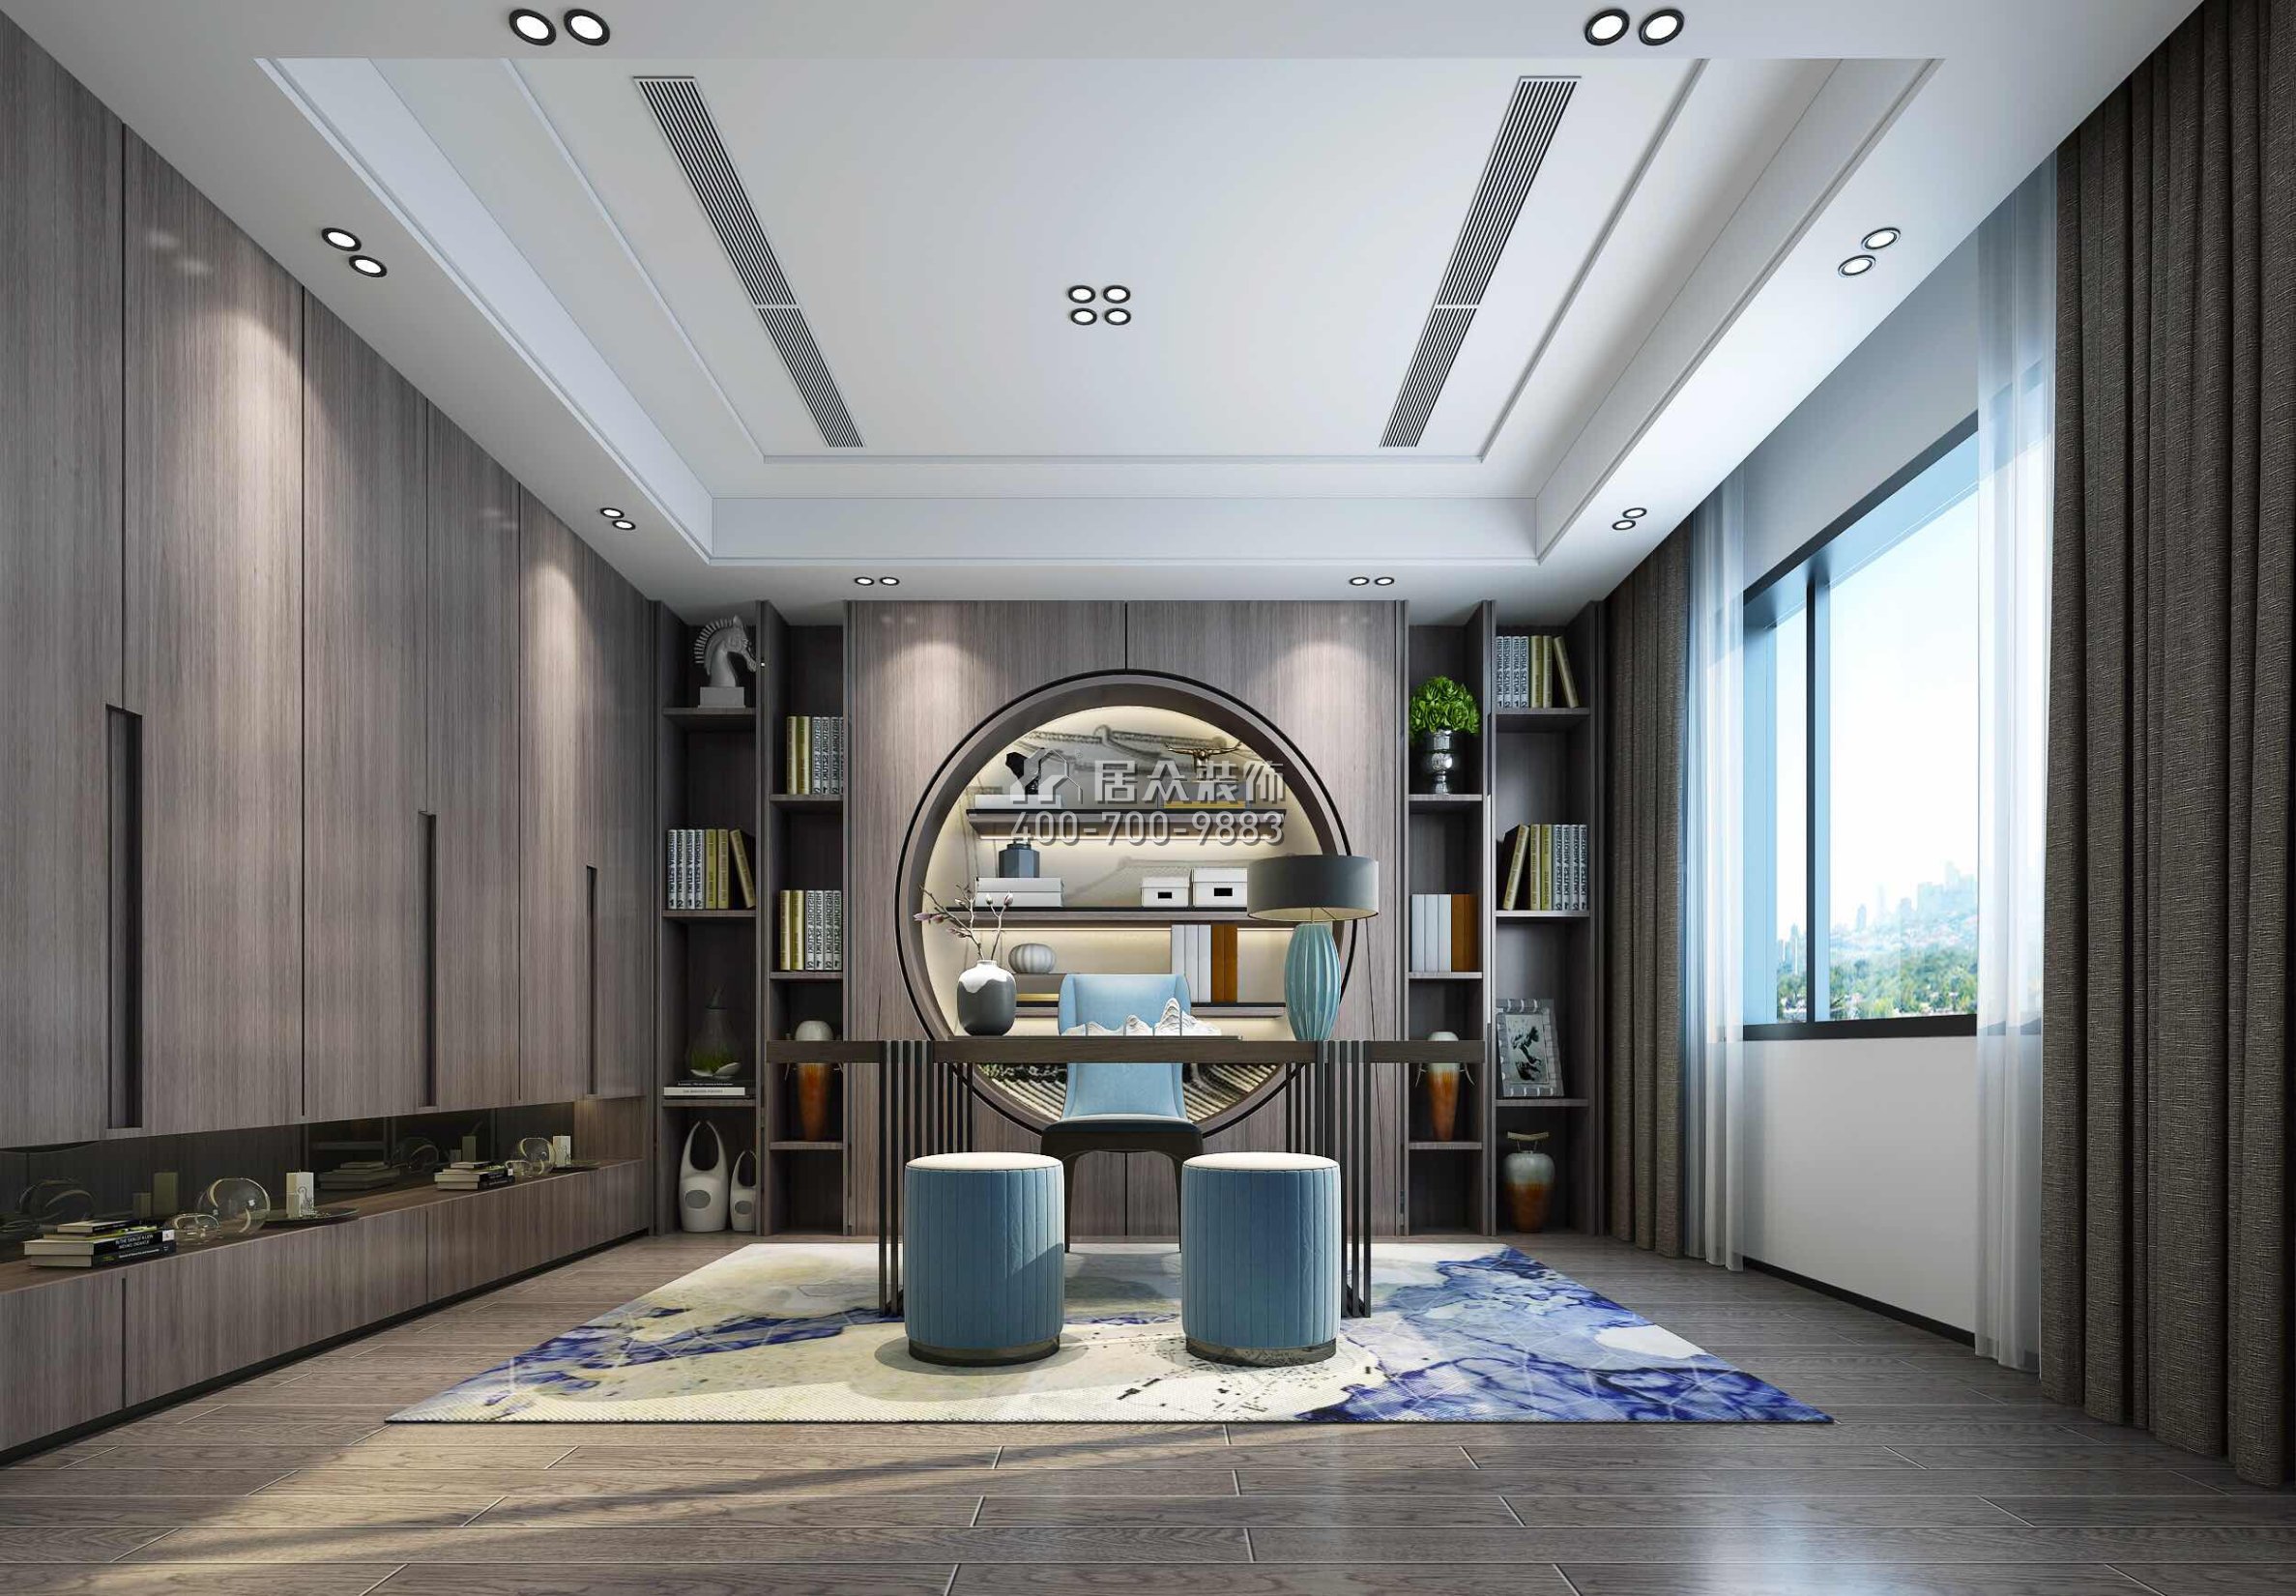 海逸豪庭321平方米現代簡約風格別墅戶型書房裝修效果圖